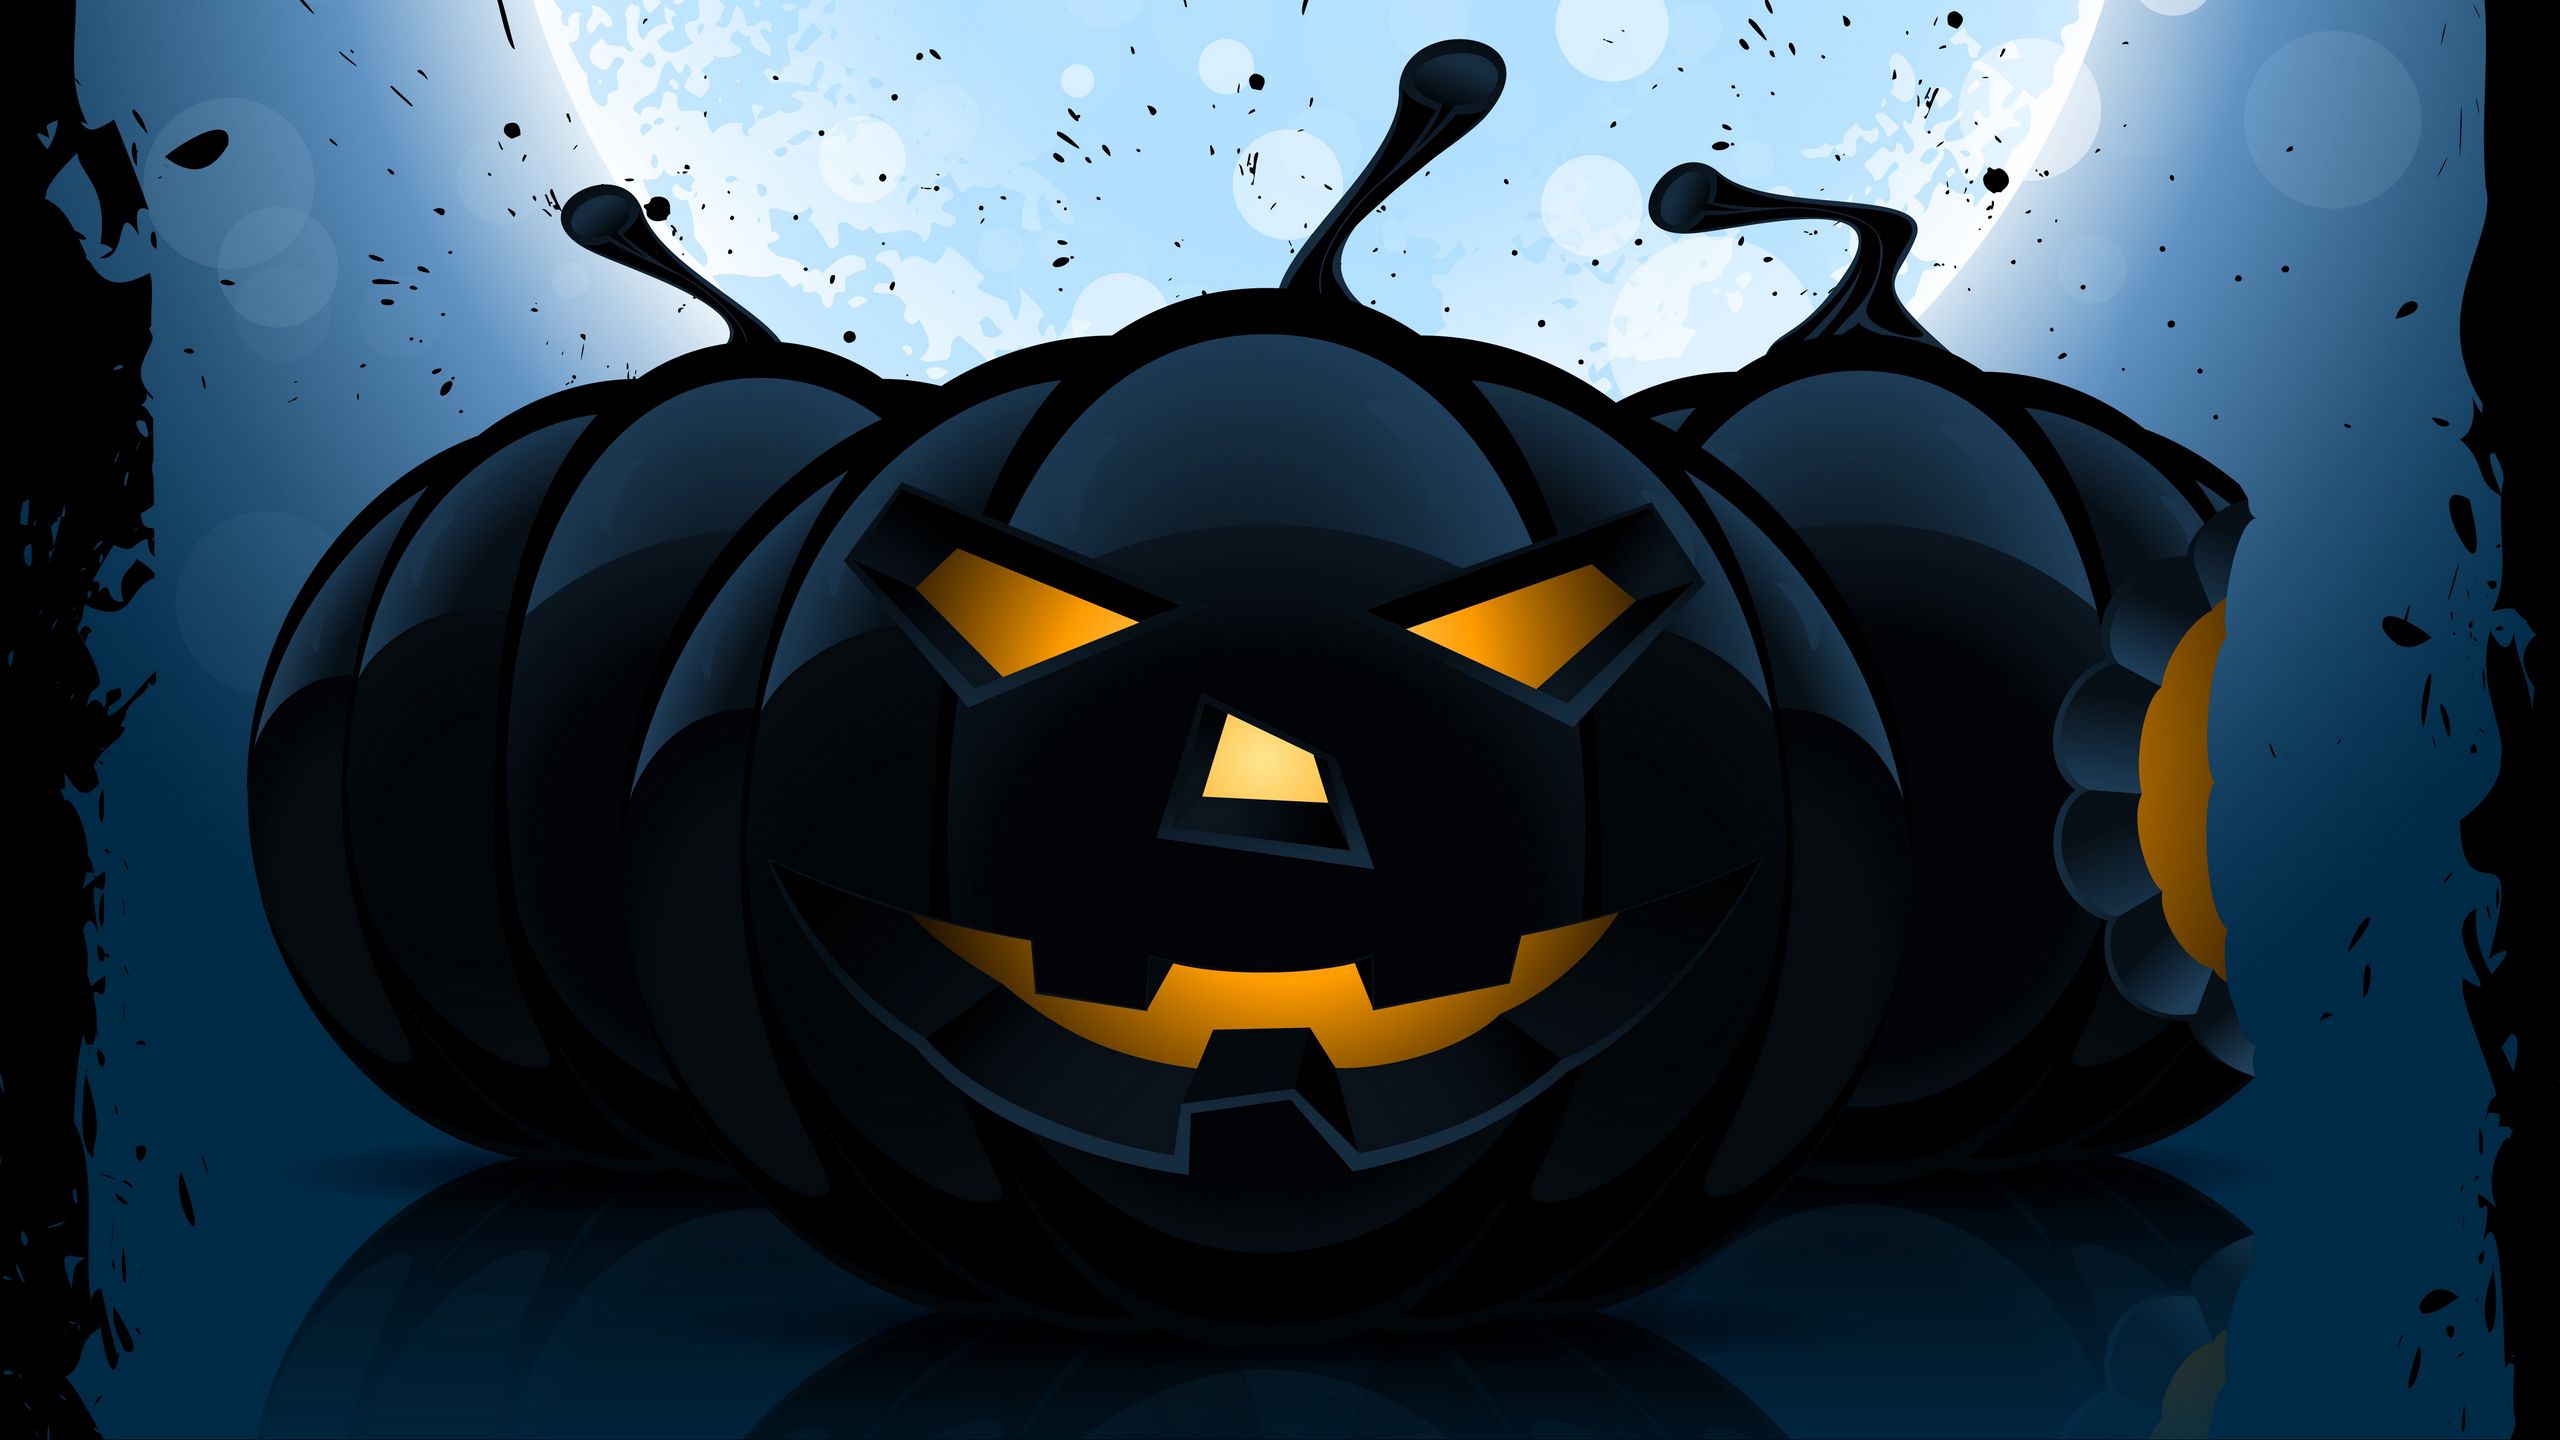 Download wallpaper 2560x1440 halloween, pumpkin, pattern, dark widescreen 16:9 HD background